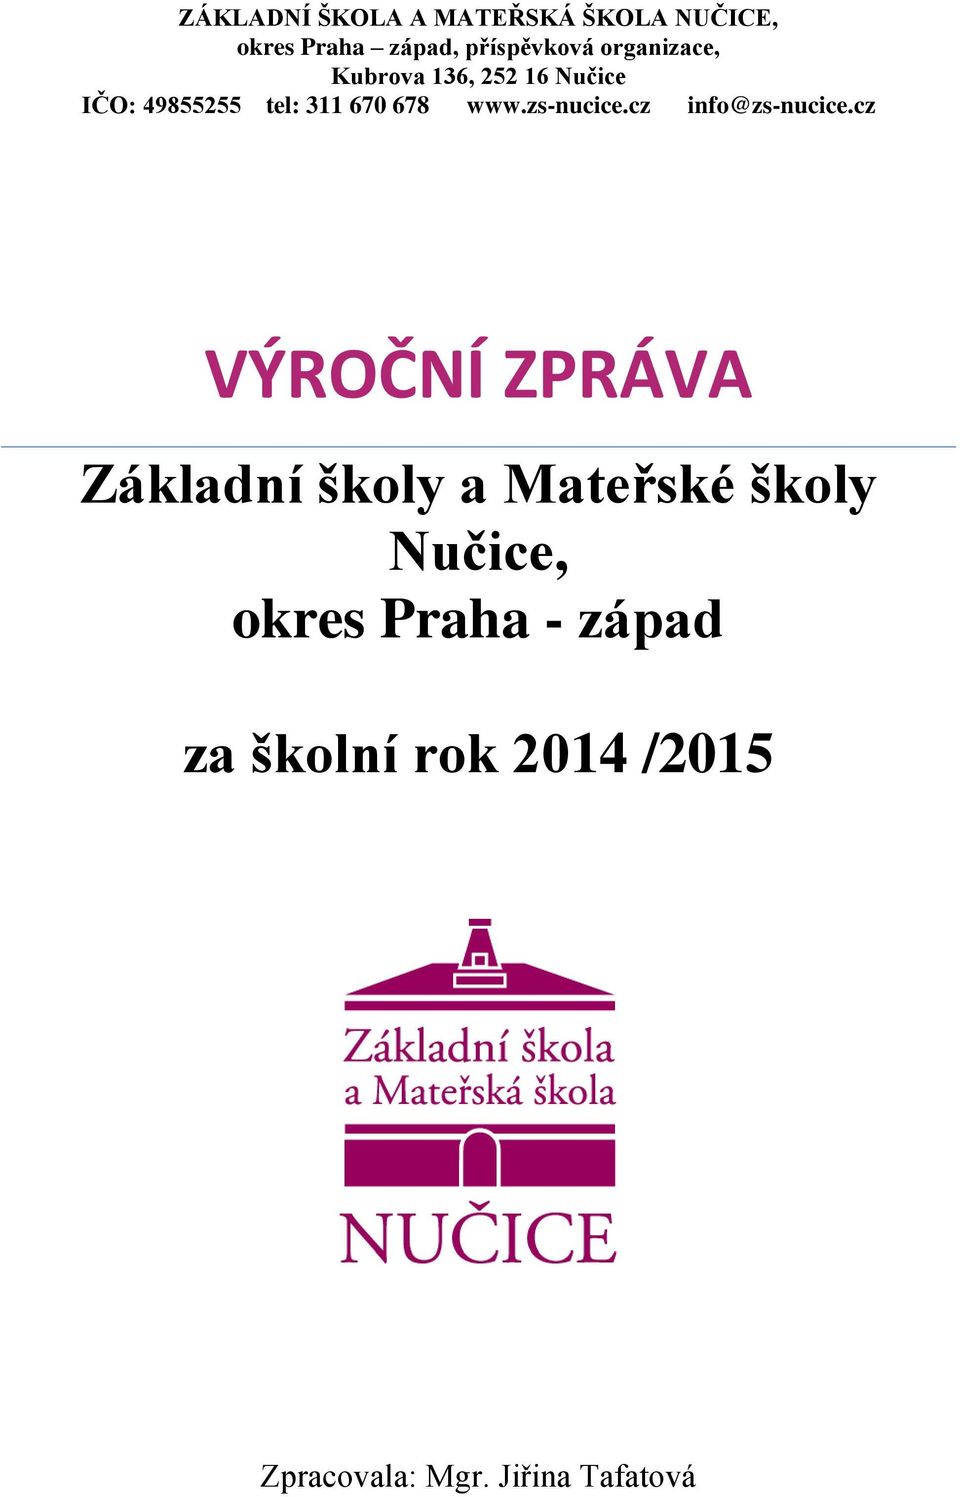 zs-nucice.cz info@zs-nucice.